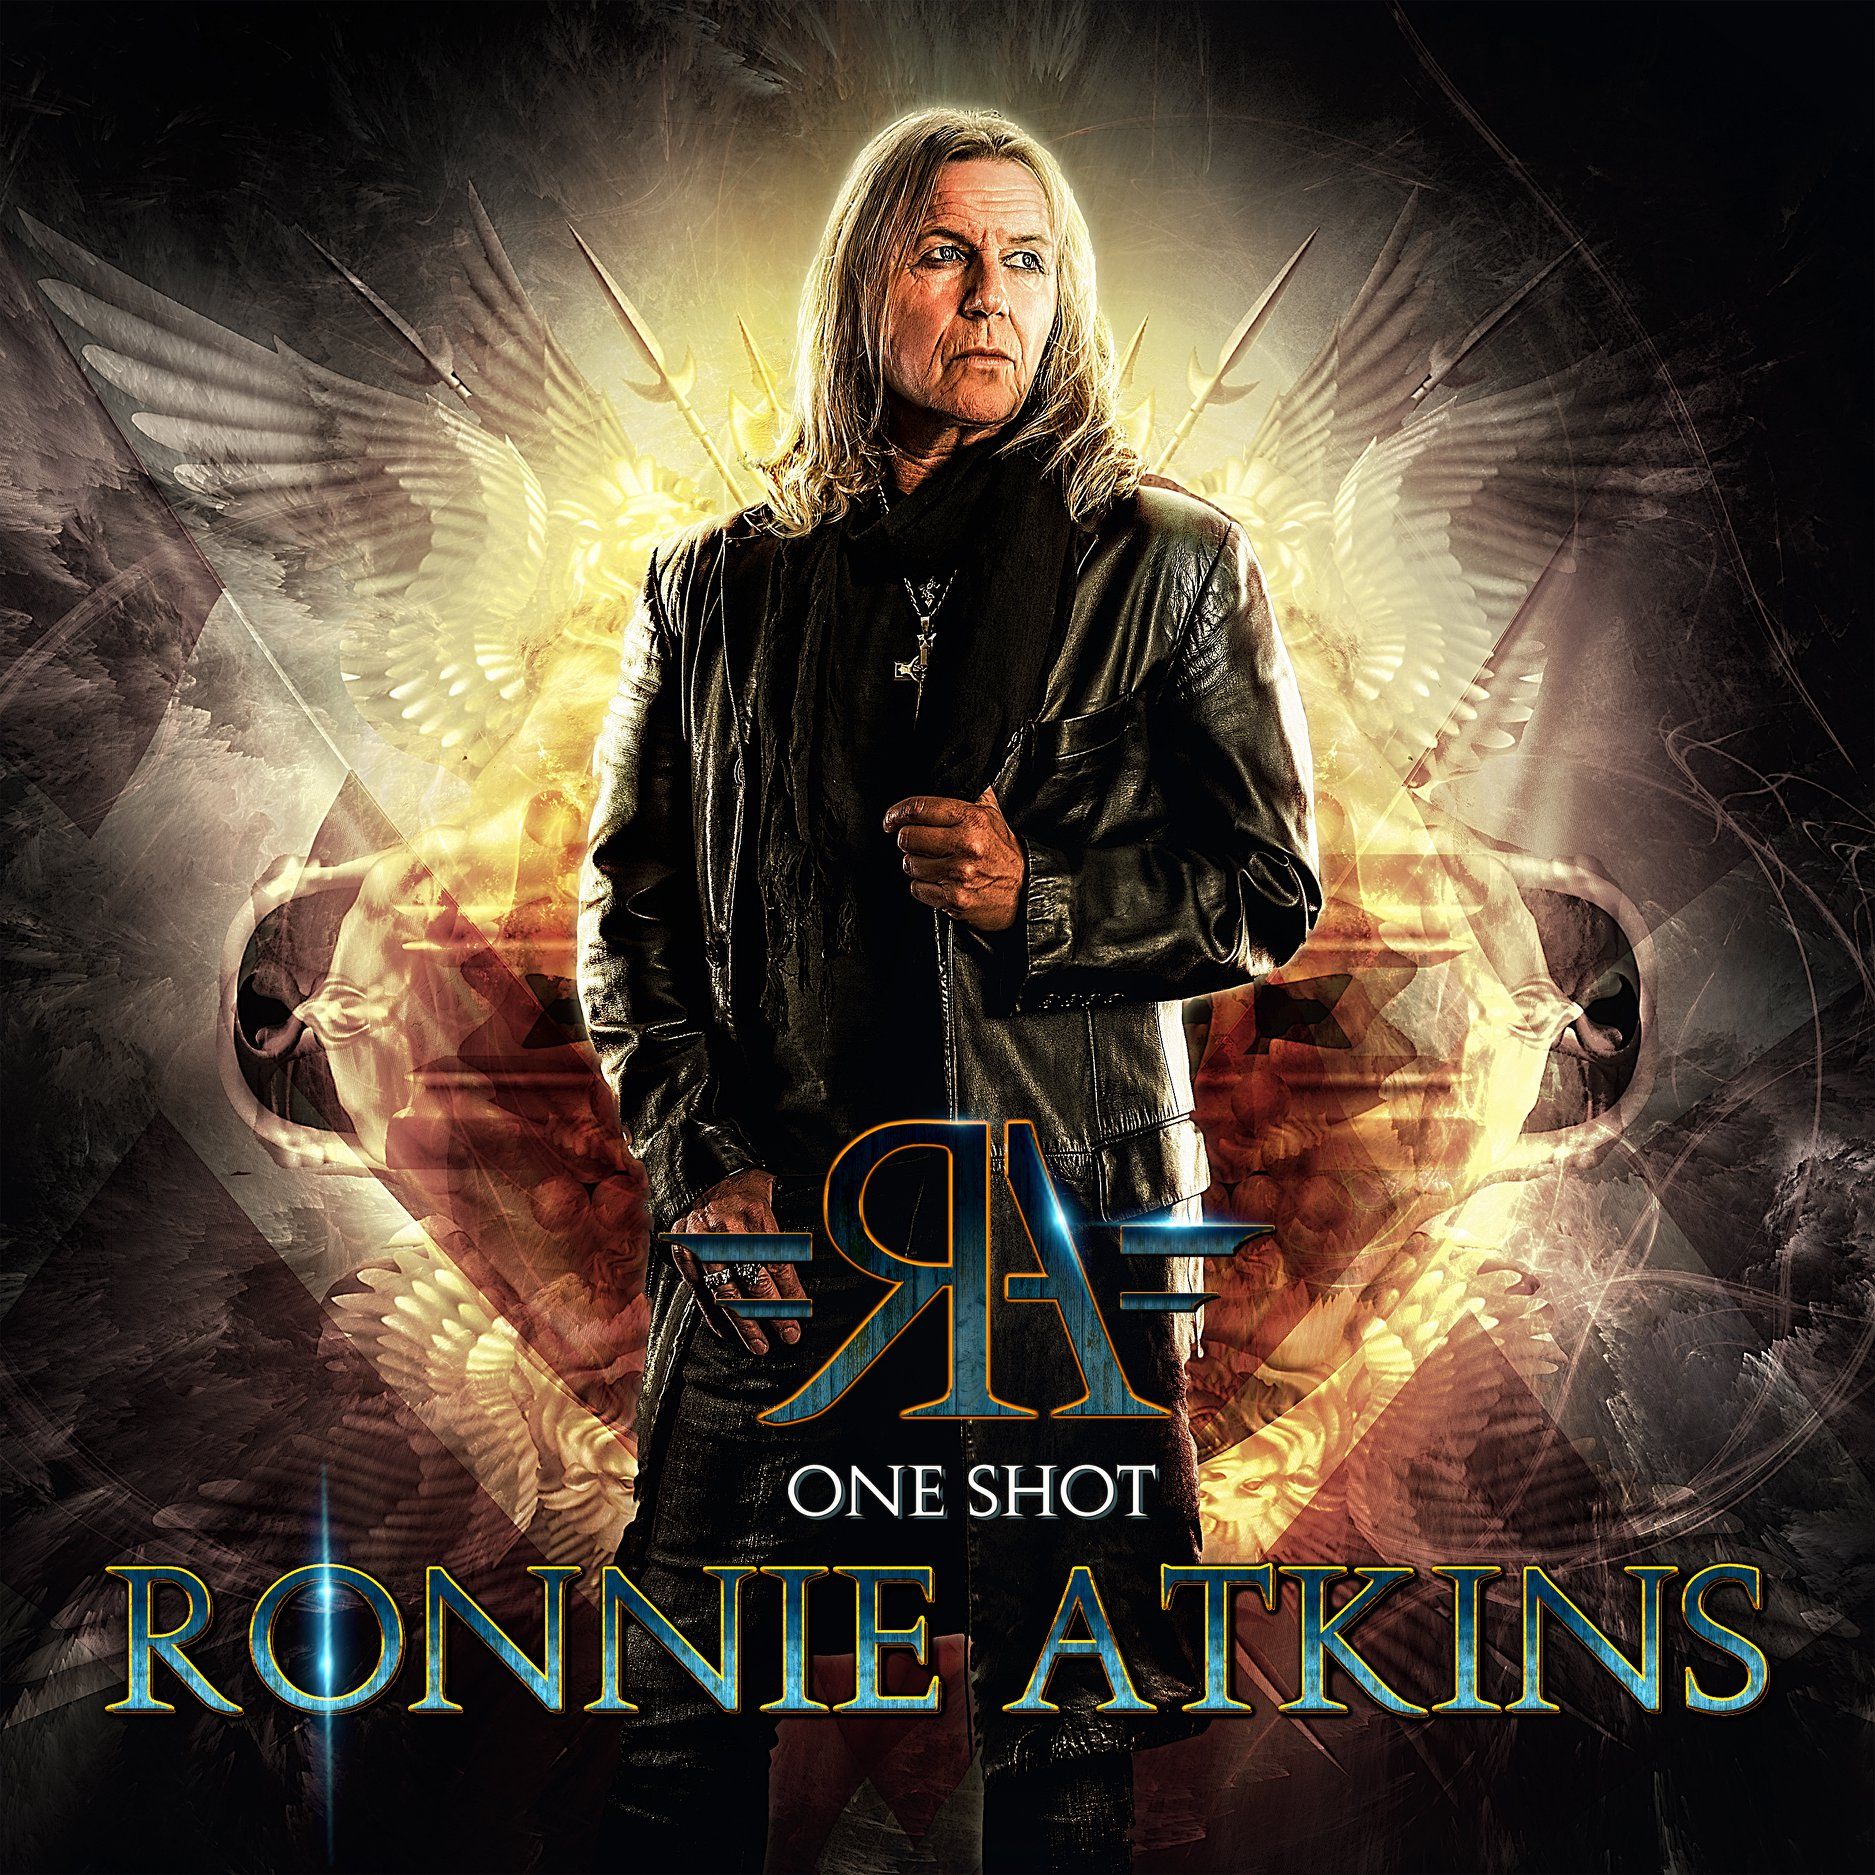 Titelsong von Ronnie Atkins' "One Shot"-Album im Video